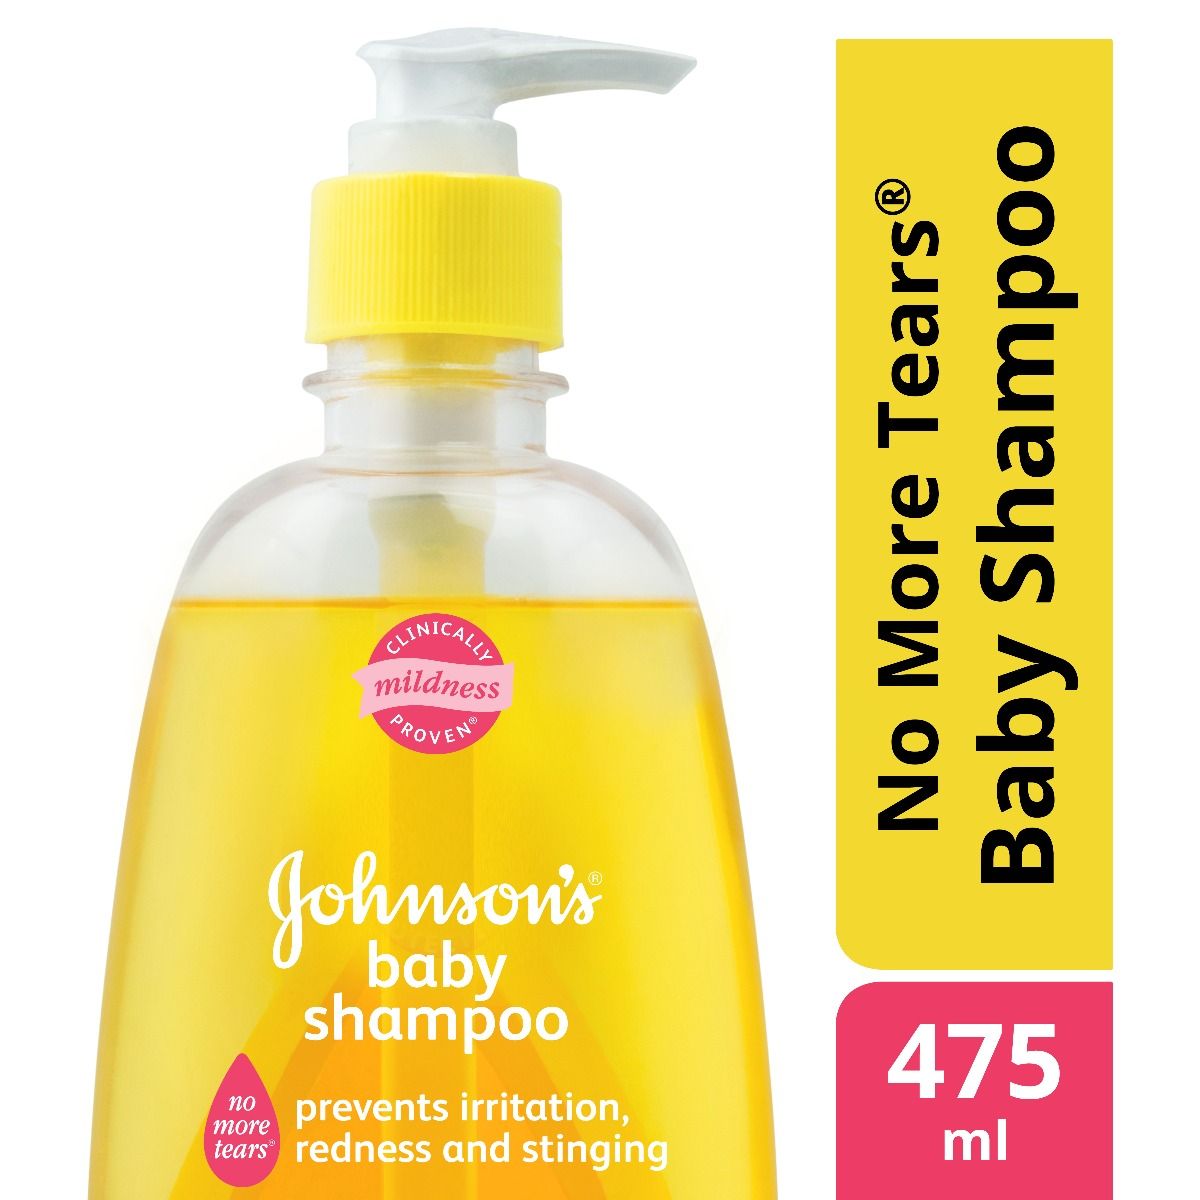 Johnson's Baby Shampoo, 475 ml, Pack of 1 